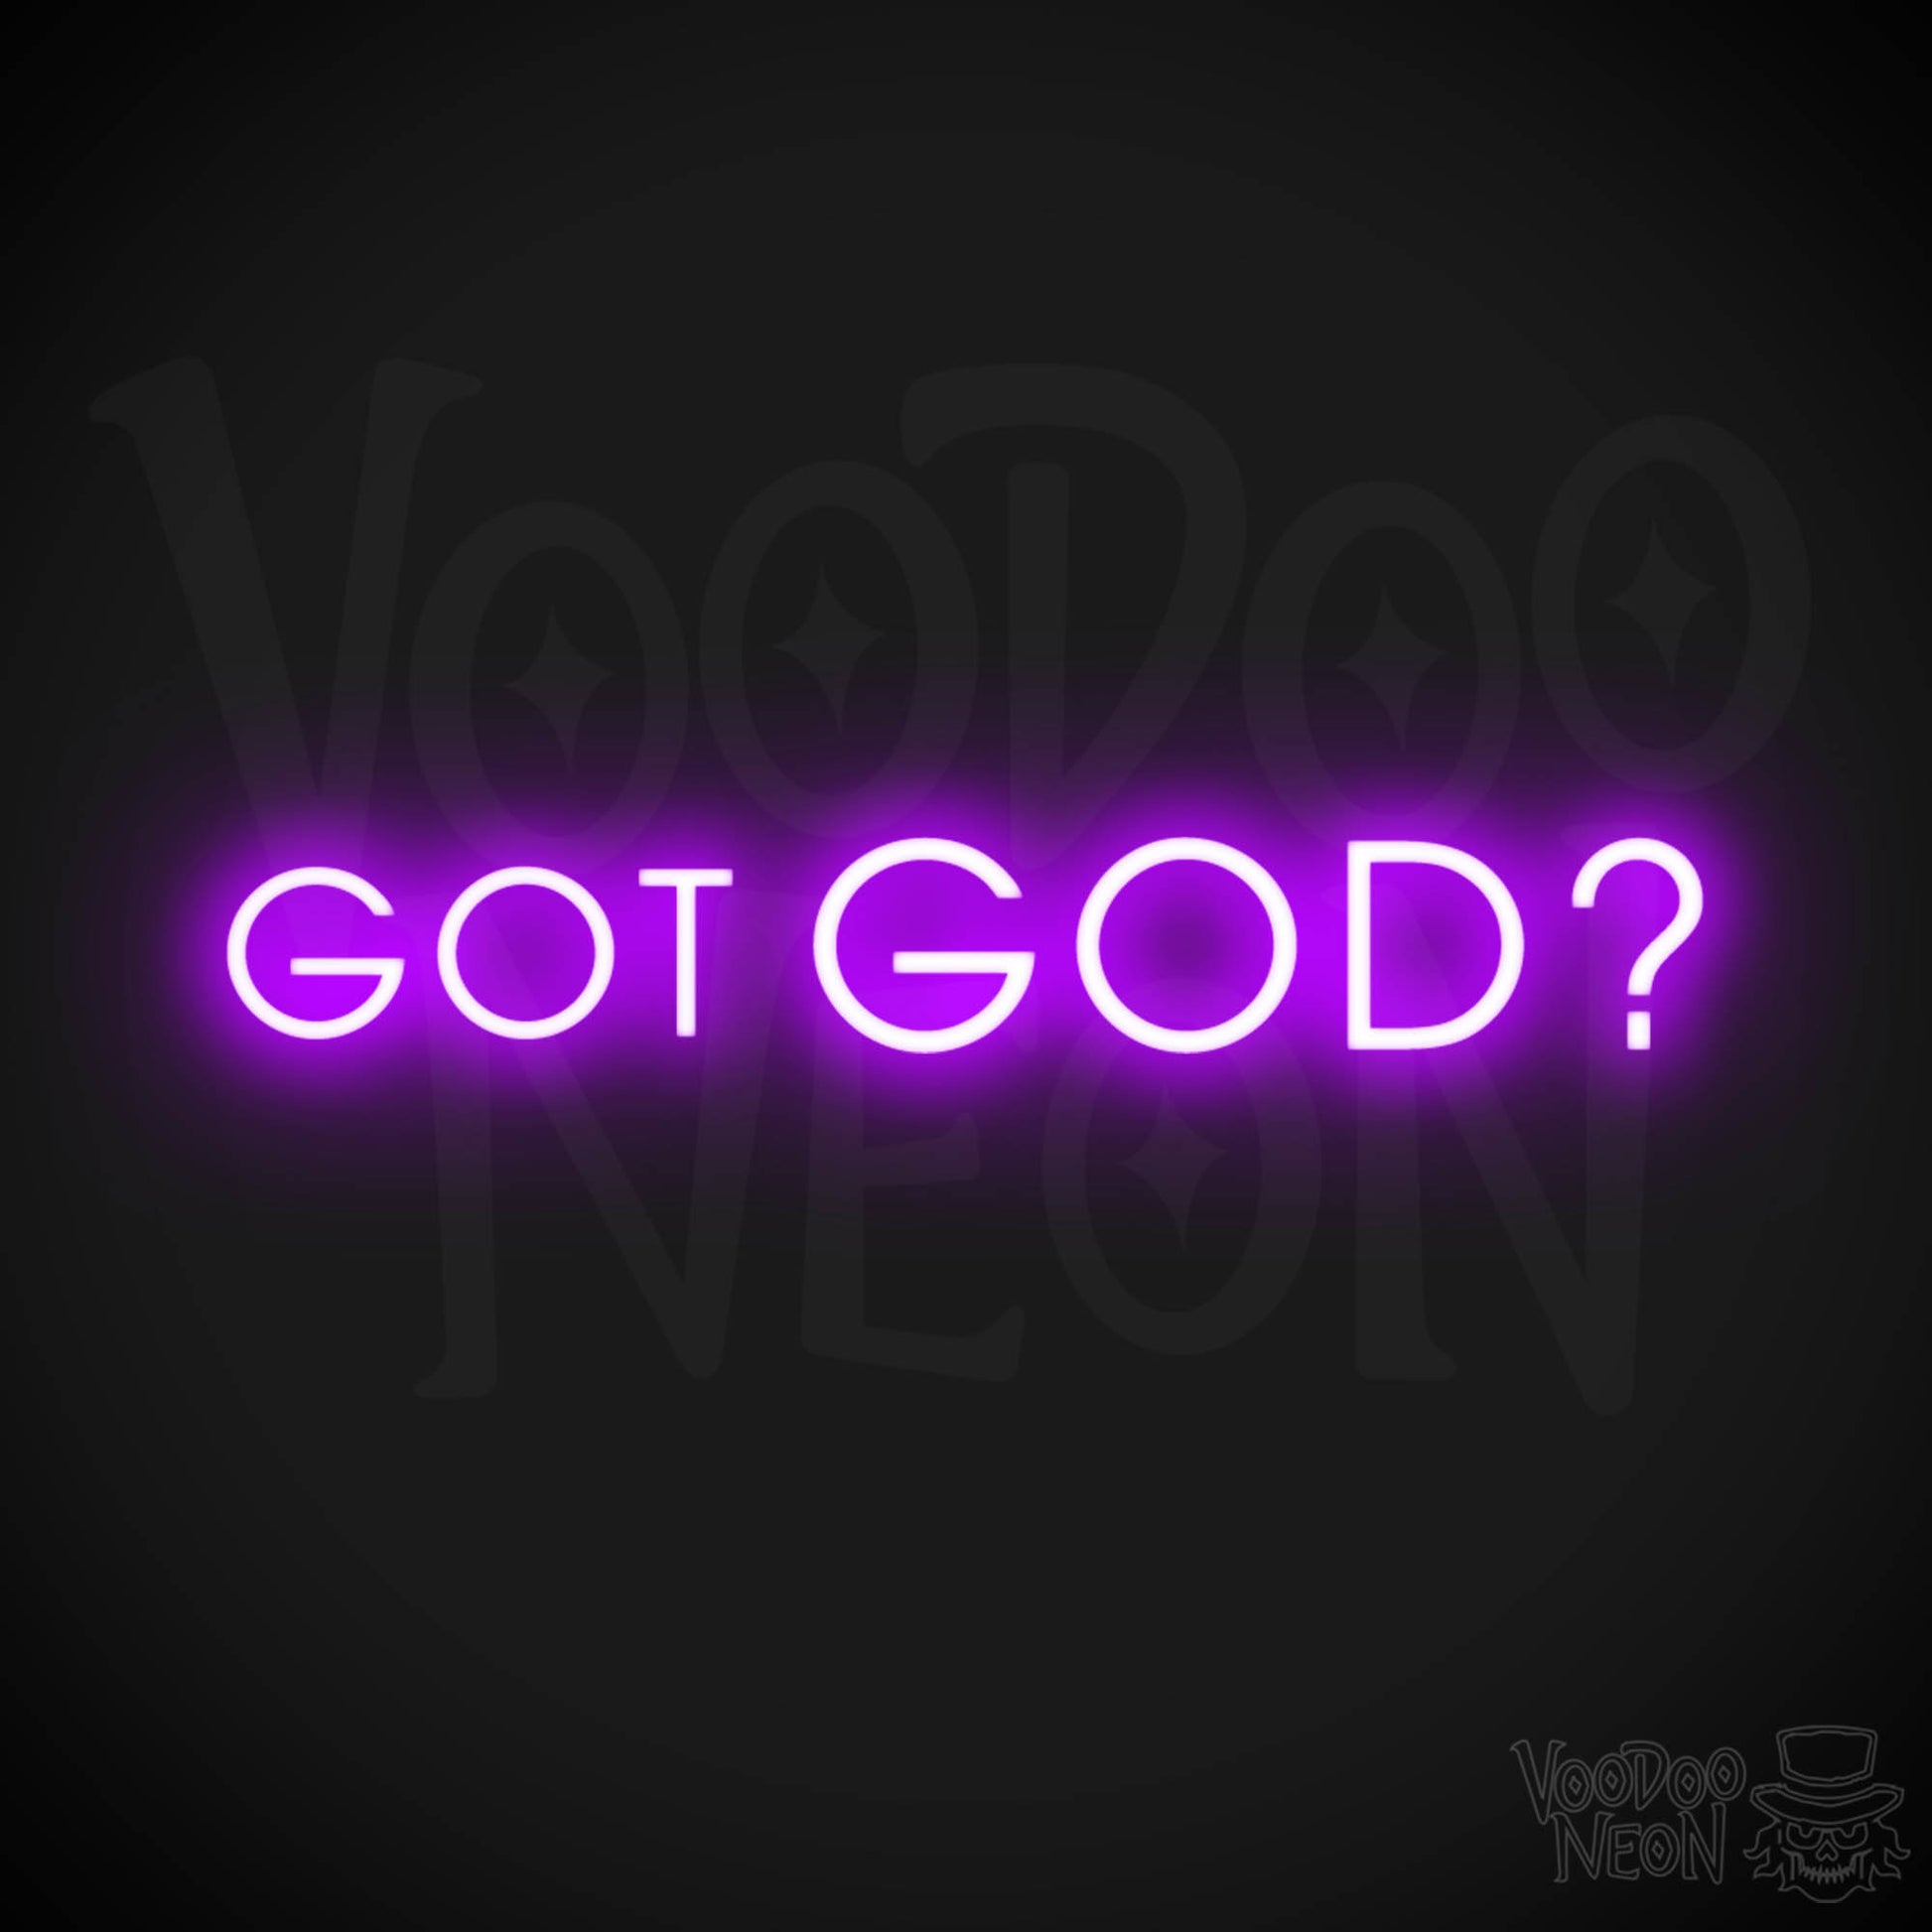 Got God Neon Sign - Neon Got God Sign - Neon God Sign - LED Wall Art - Color Purple